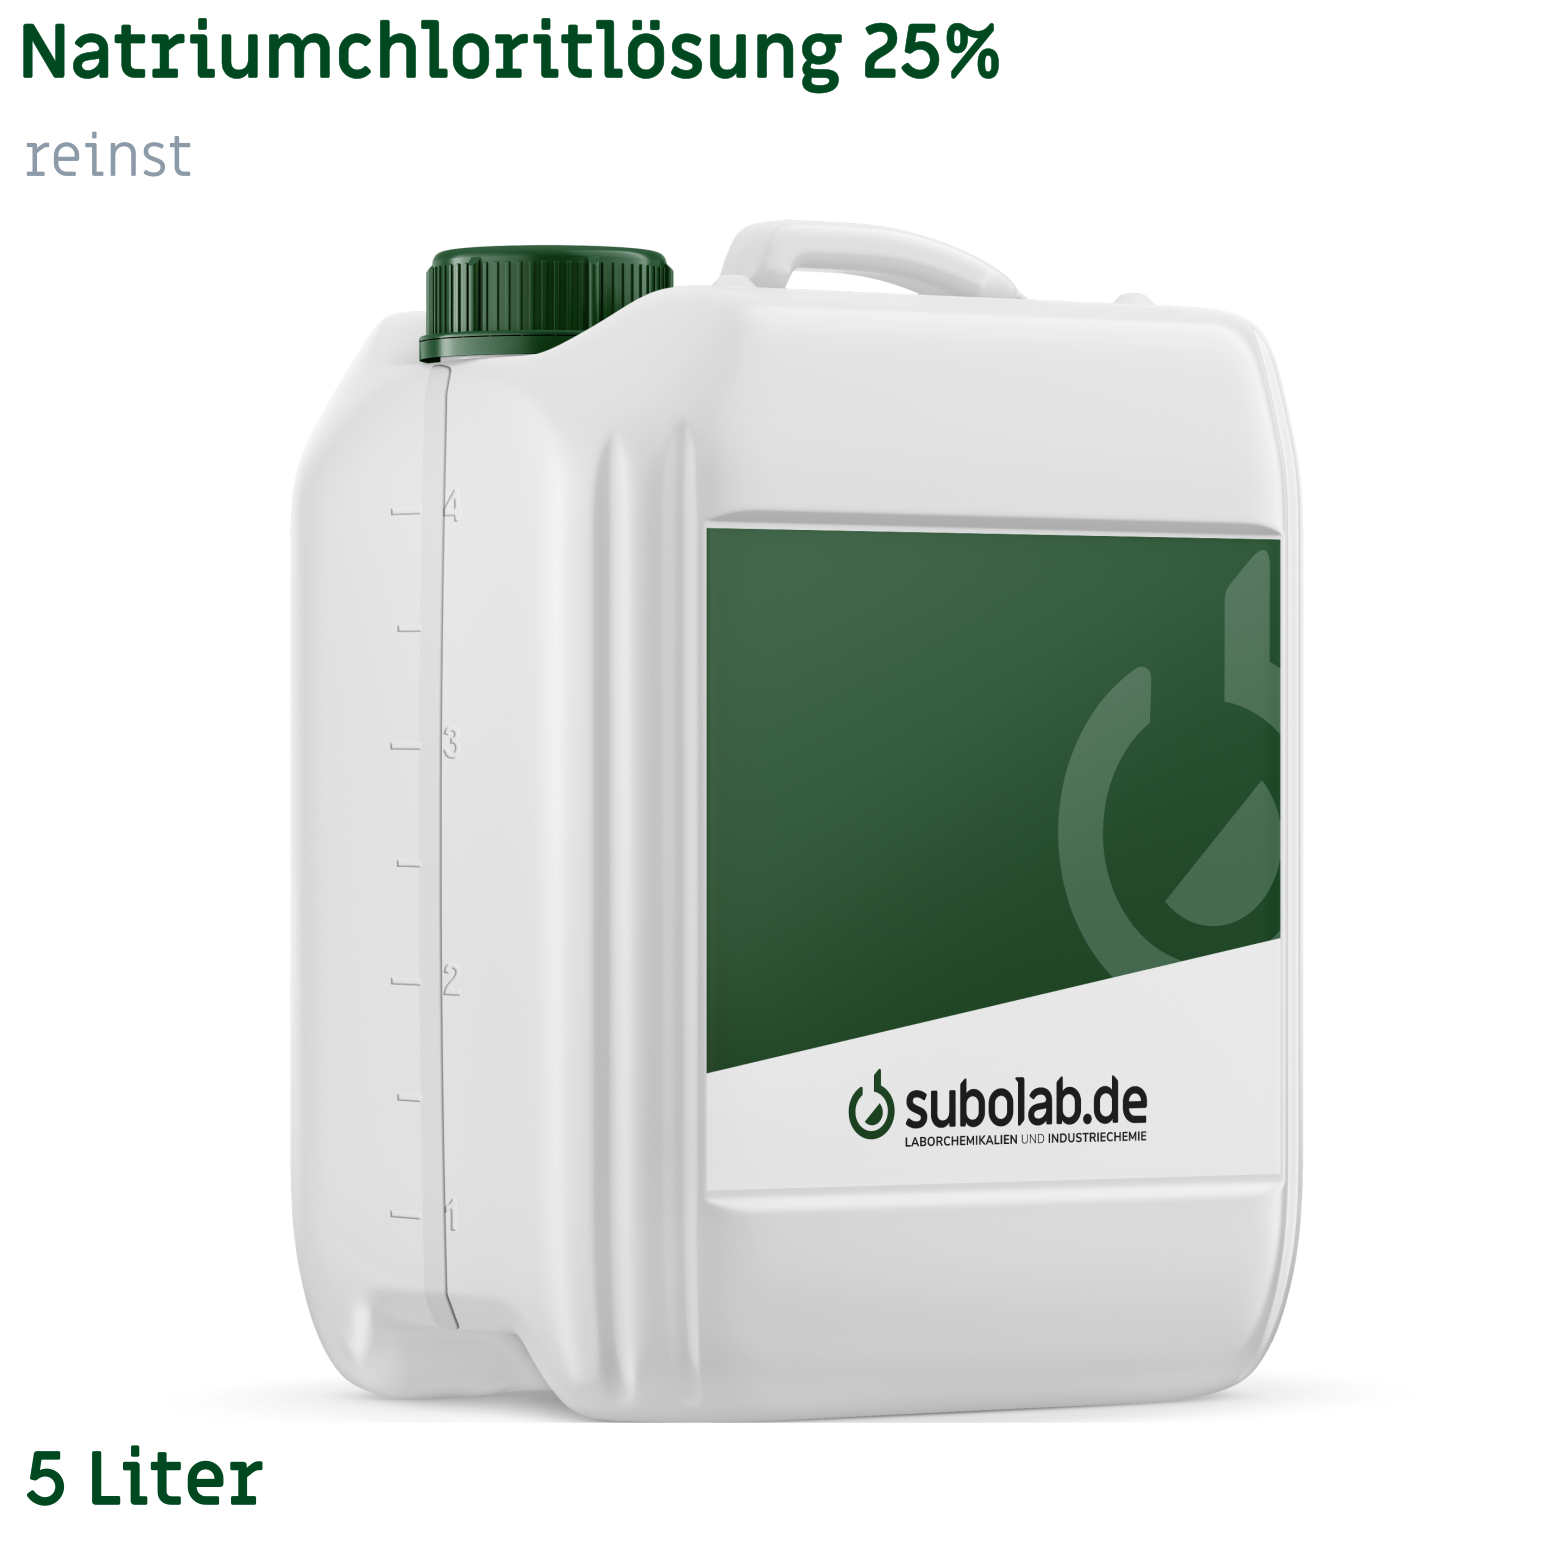 Bild von Natriumchloritlösung 25% reinst (5 Liter)